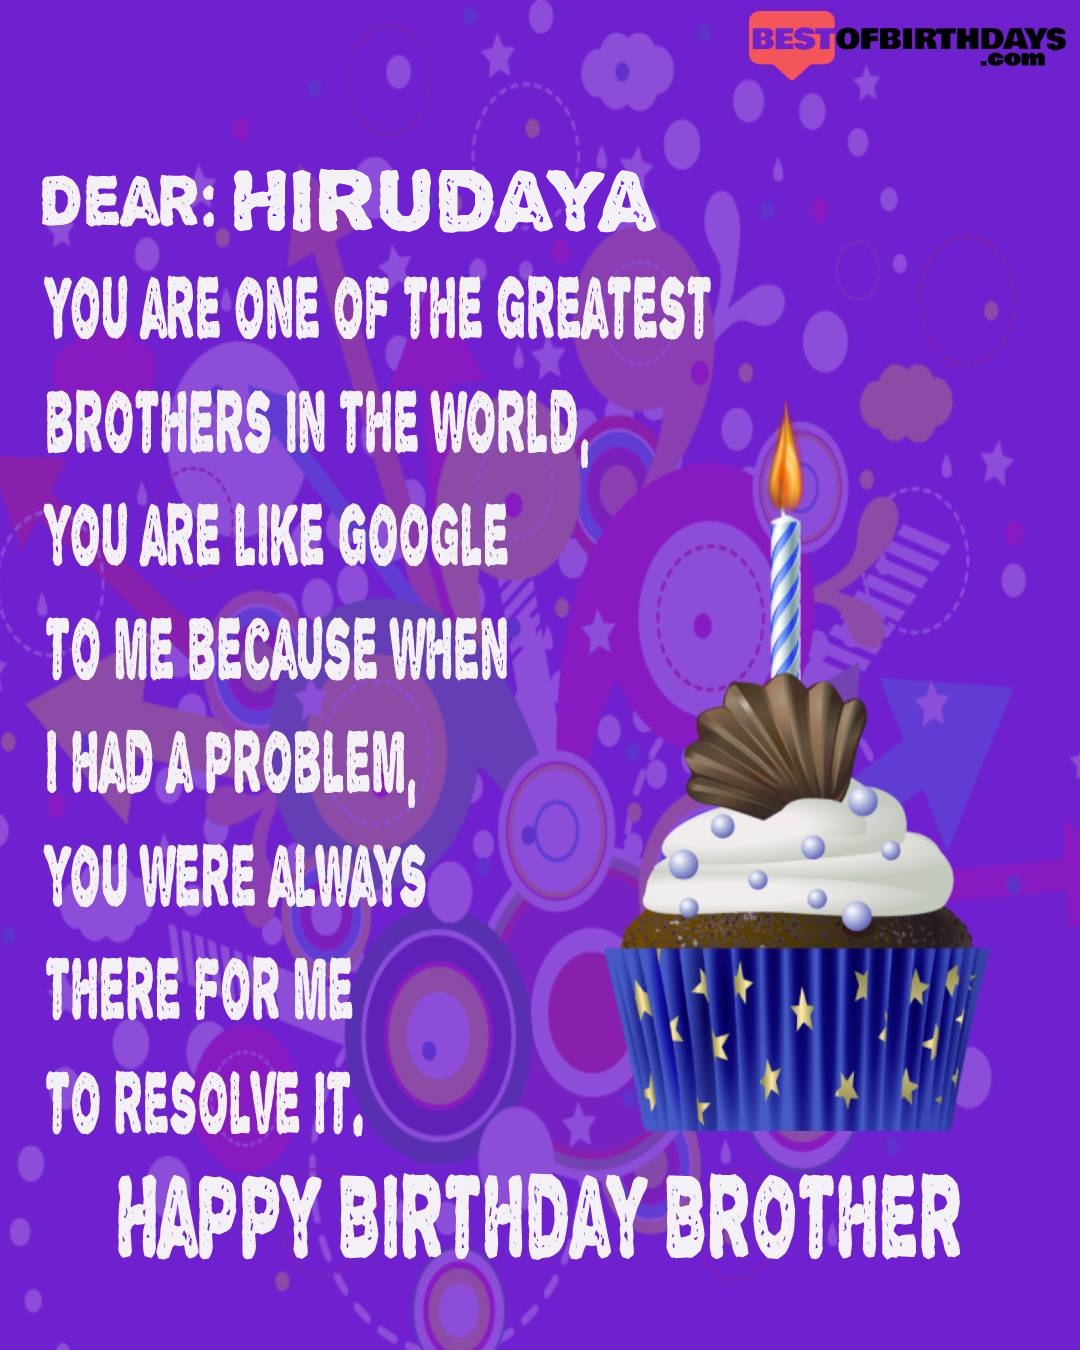 Happy birthday hirudaya bhai brother bro